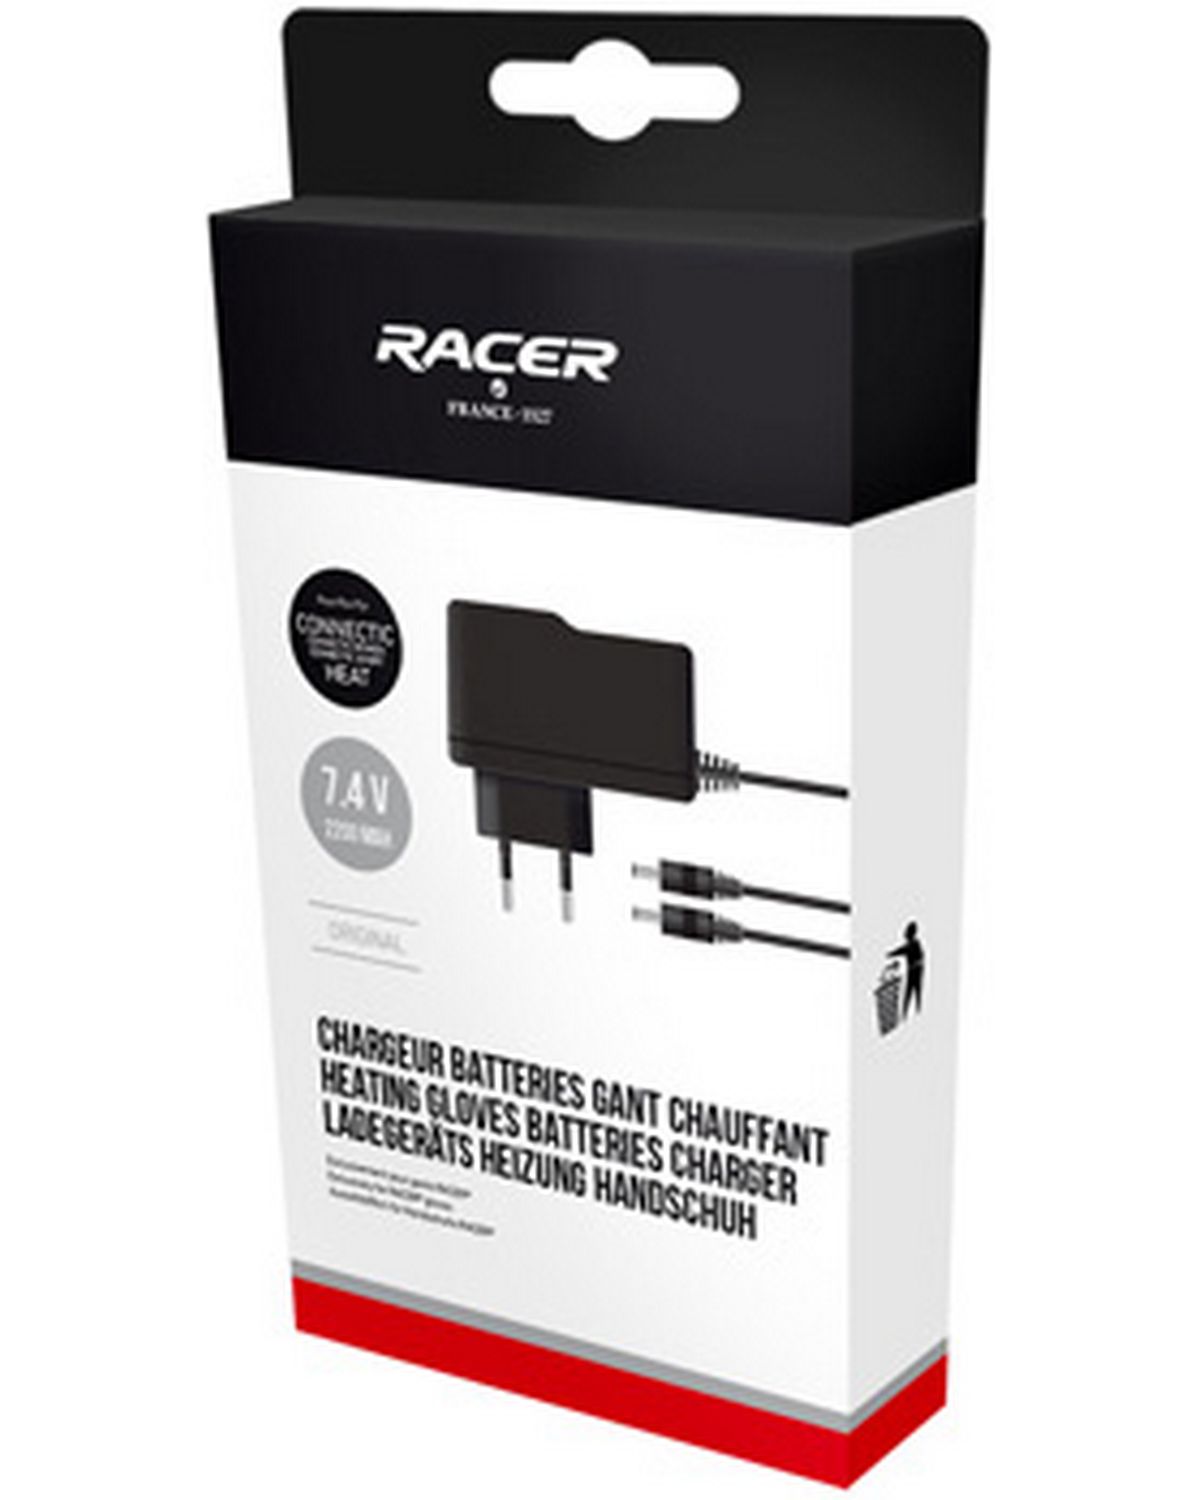 Chargeur batterie gants Racer